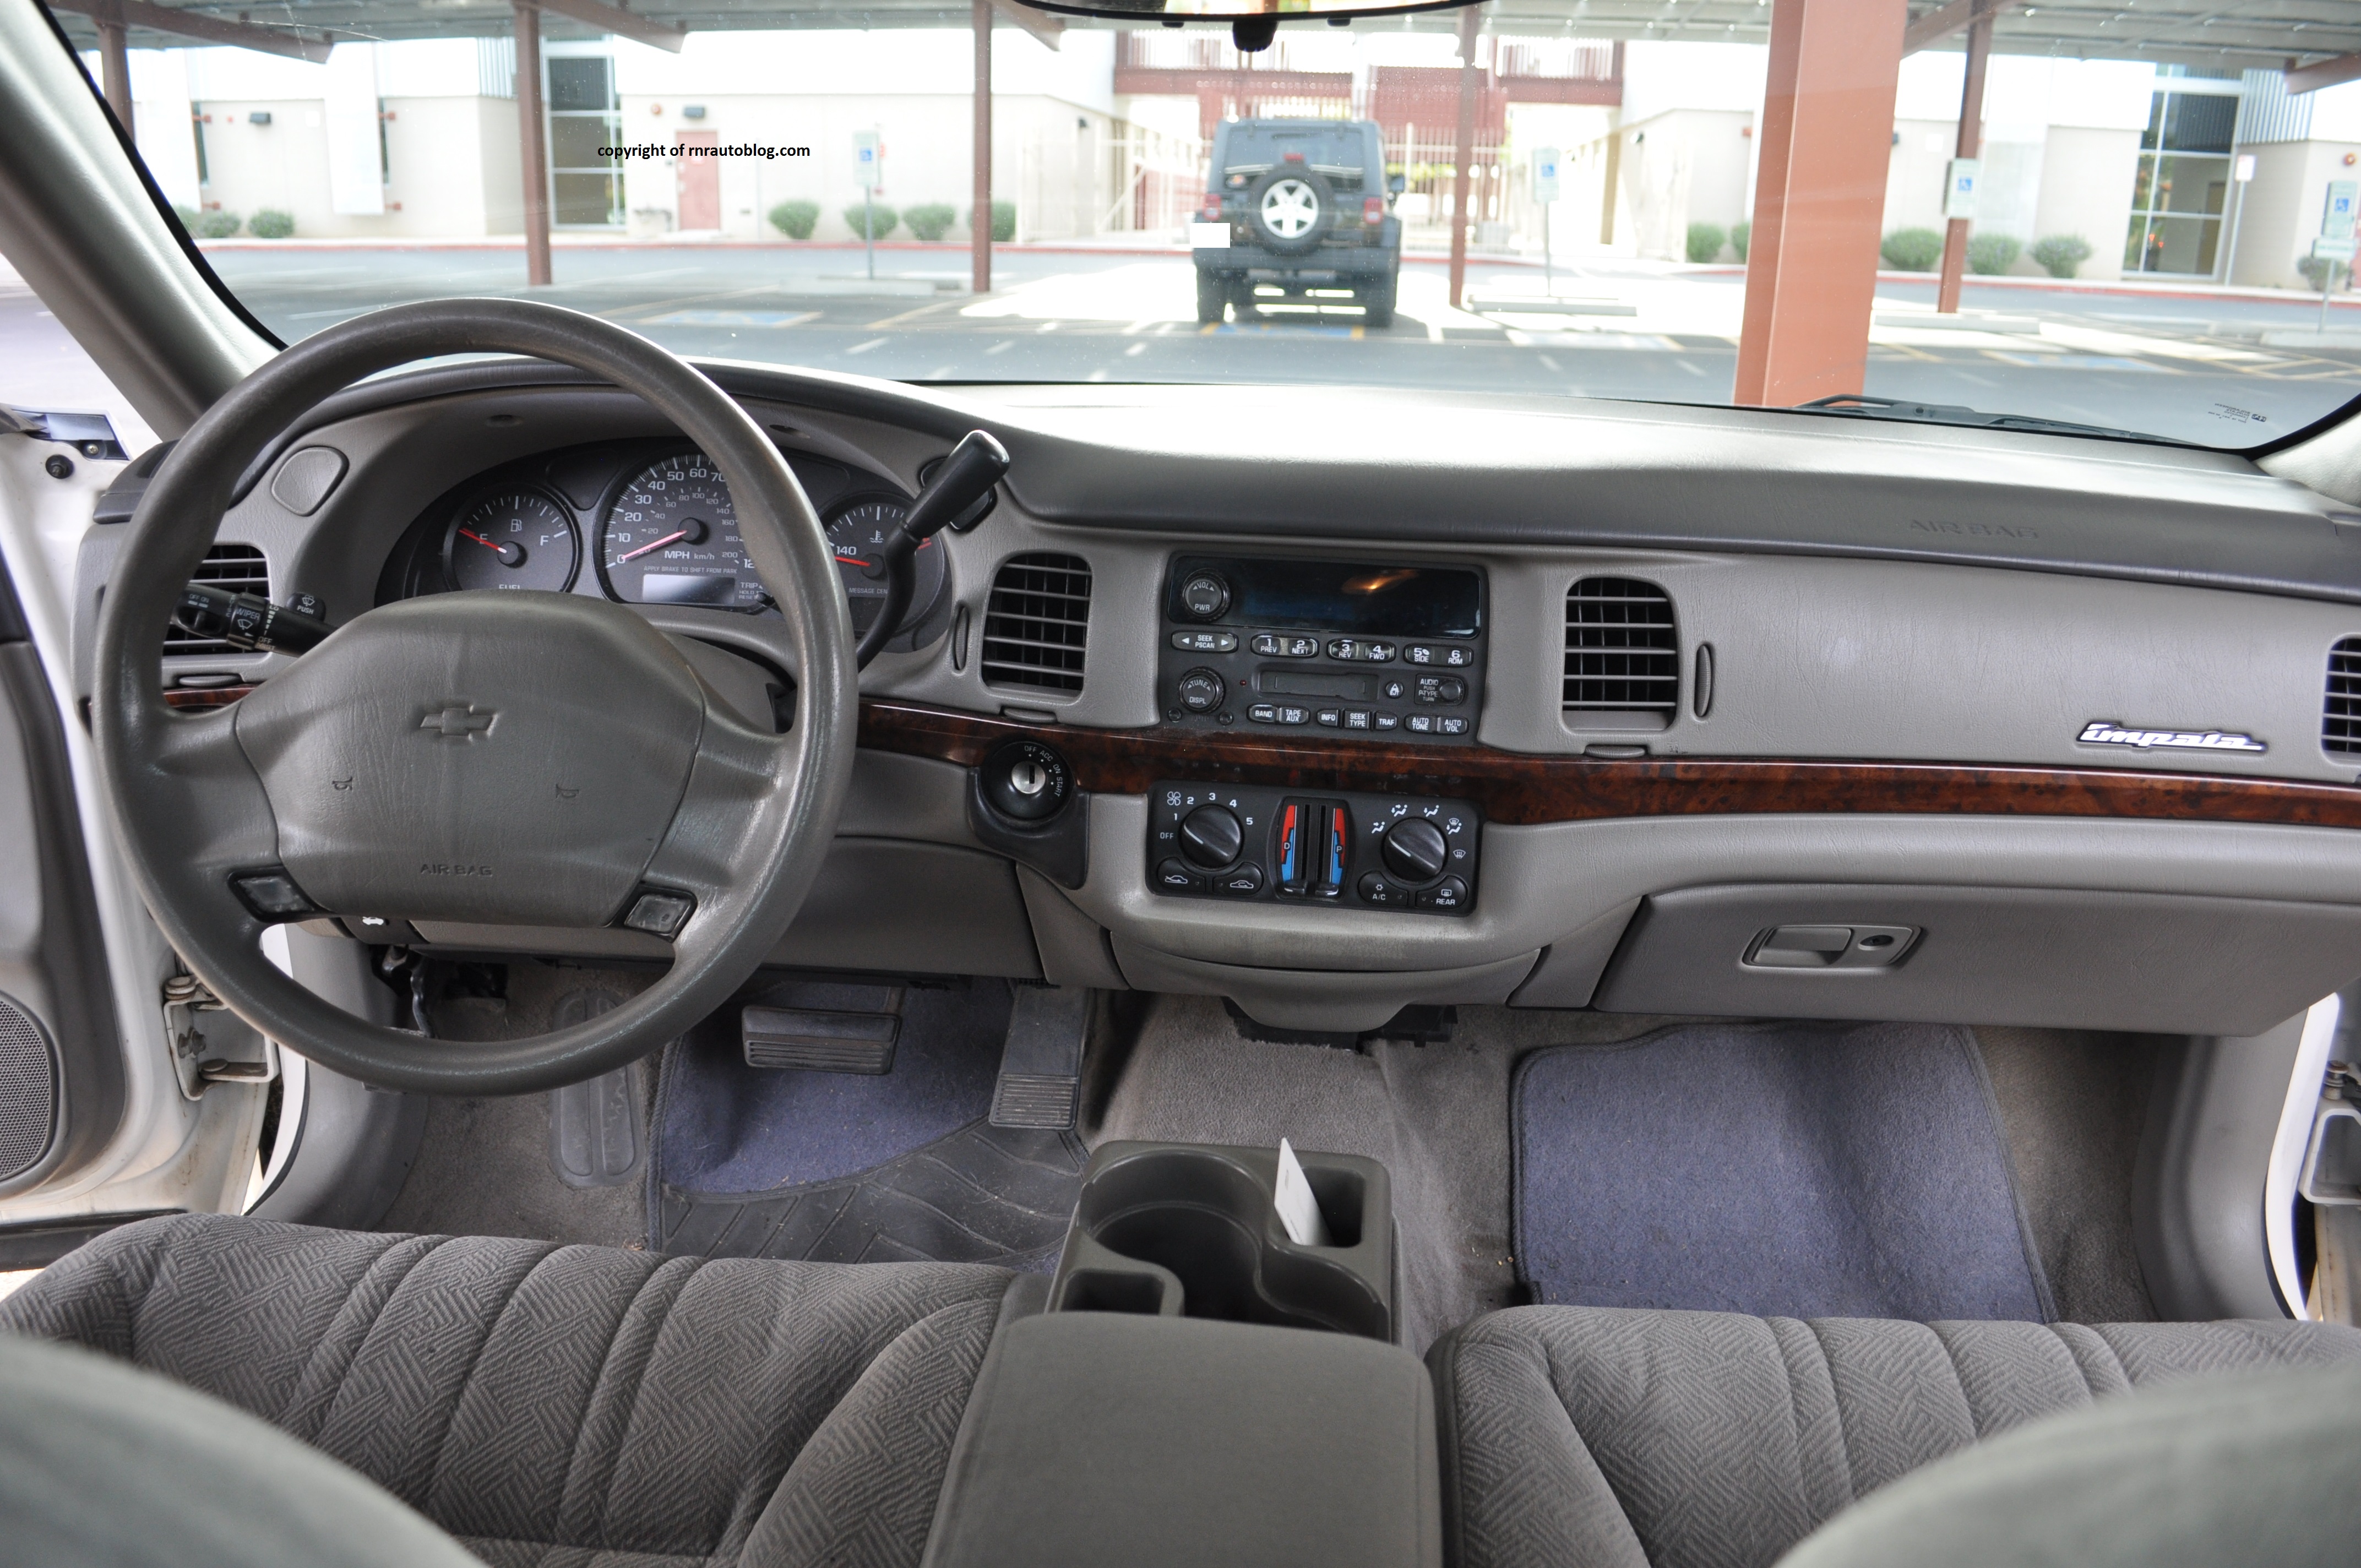 Chevy impala 2003 interior